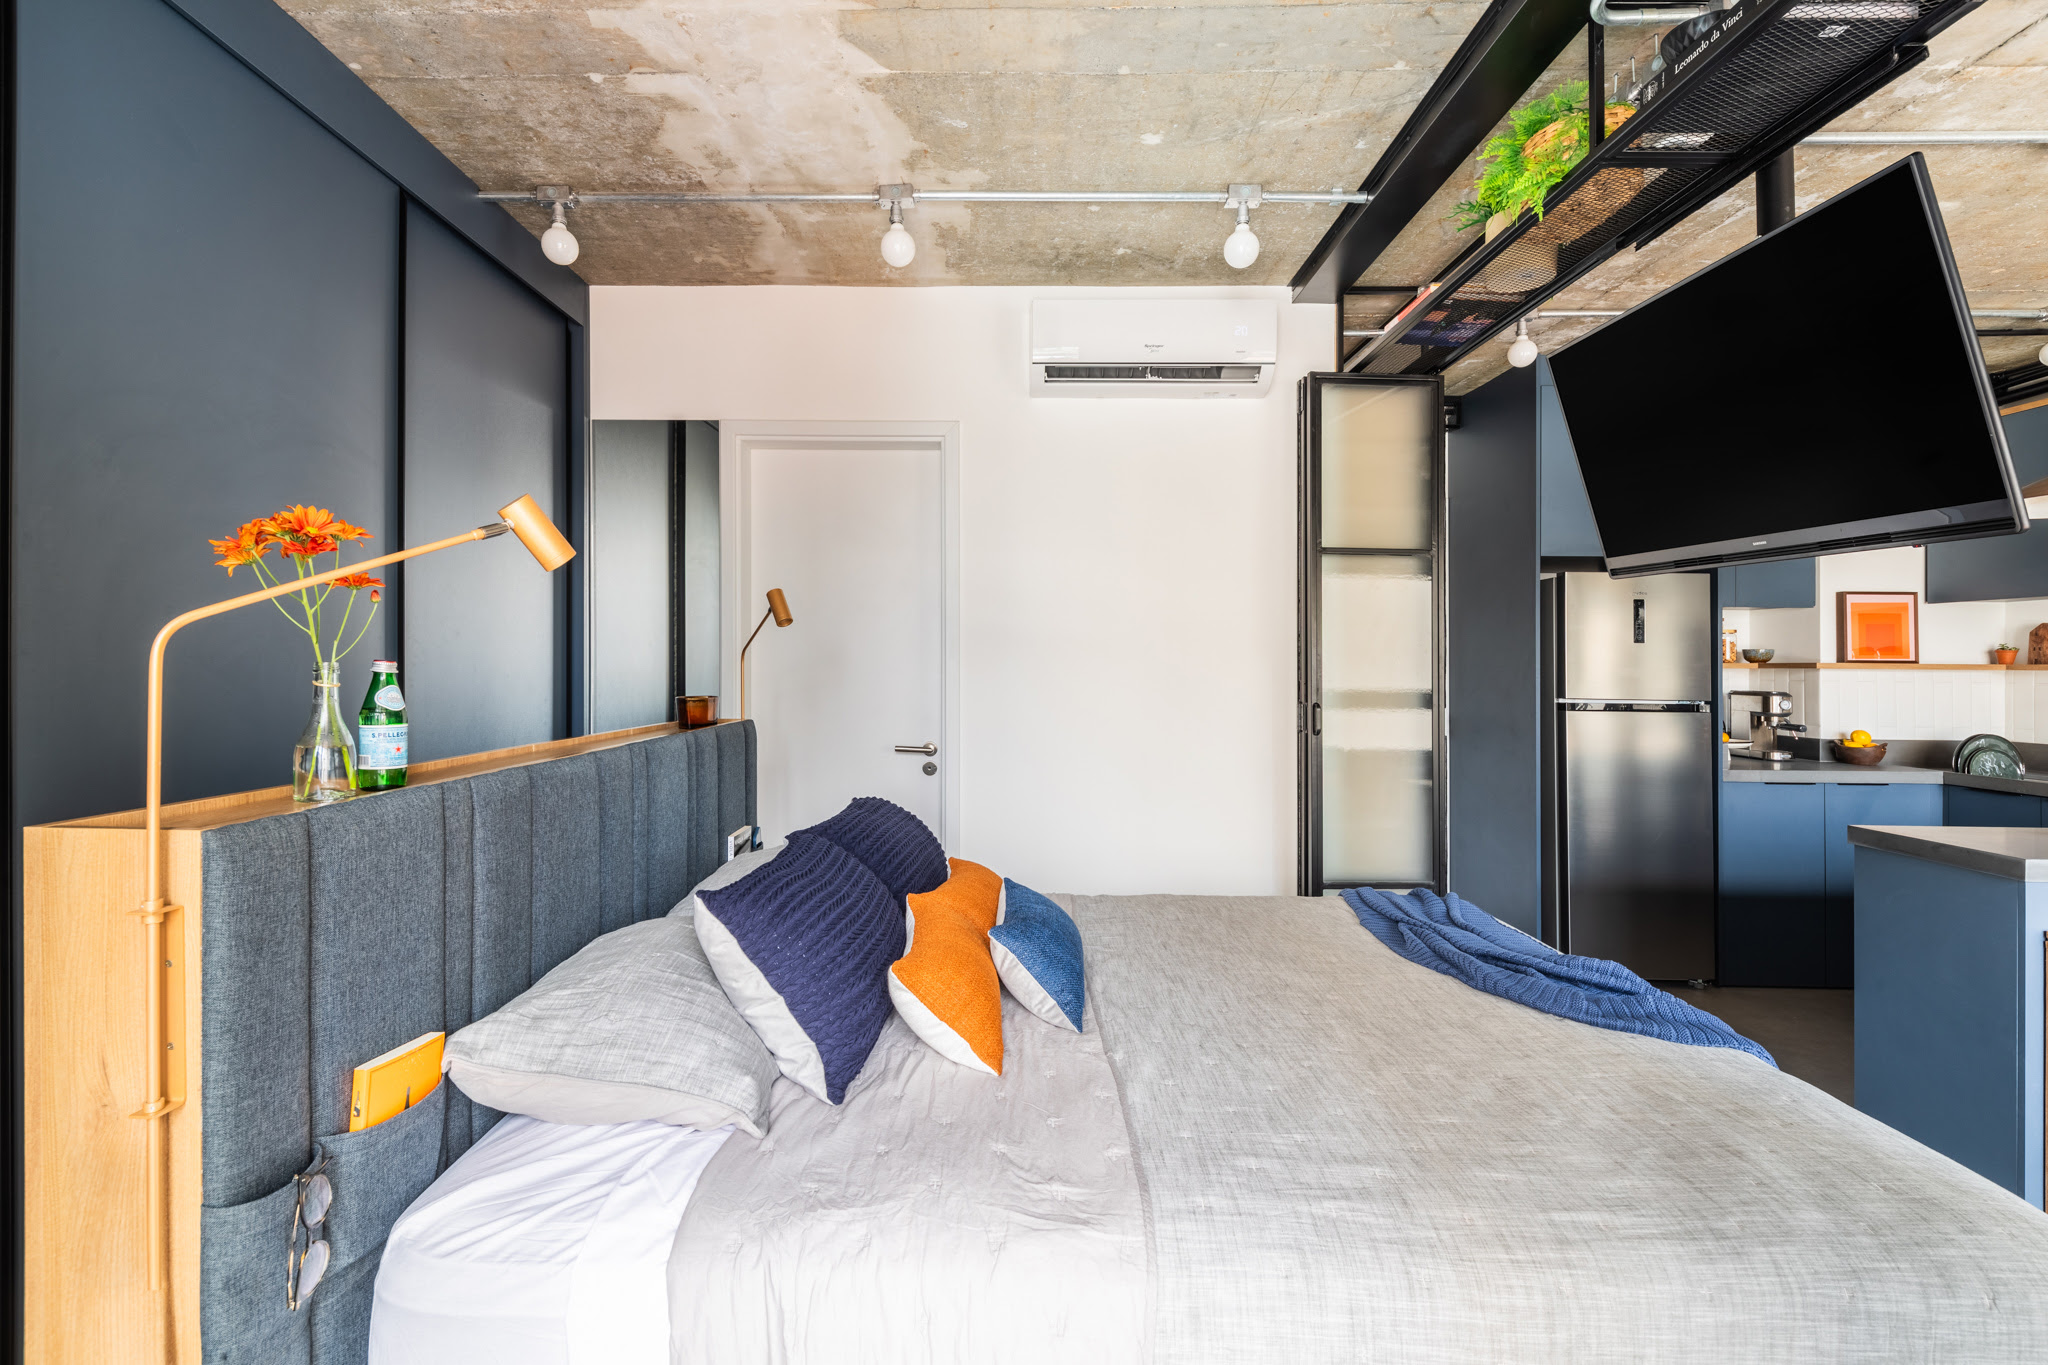 No dormitório do studio, a arquiteta Júlia Guadix conseguiu colocar uma cama queen, sem comprometer a circulação no ambiente. | Projeto: Studio Guadix | Foto: Guilherme Pucci